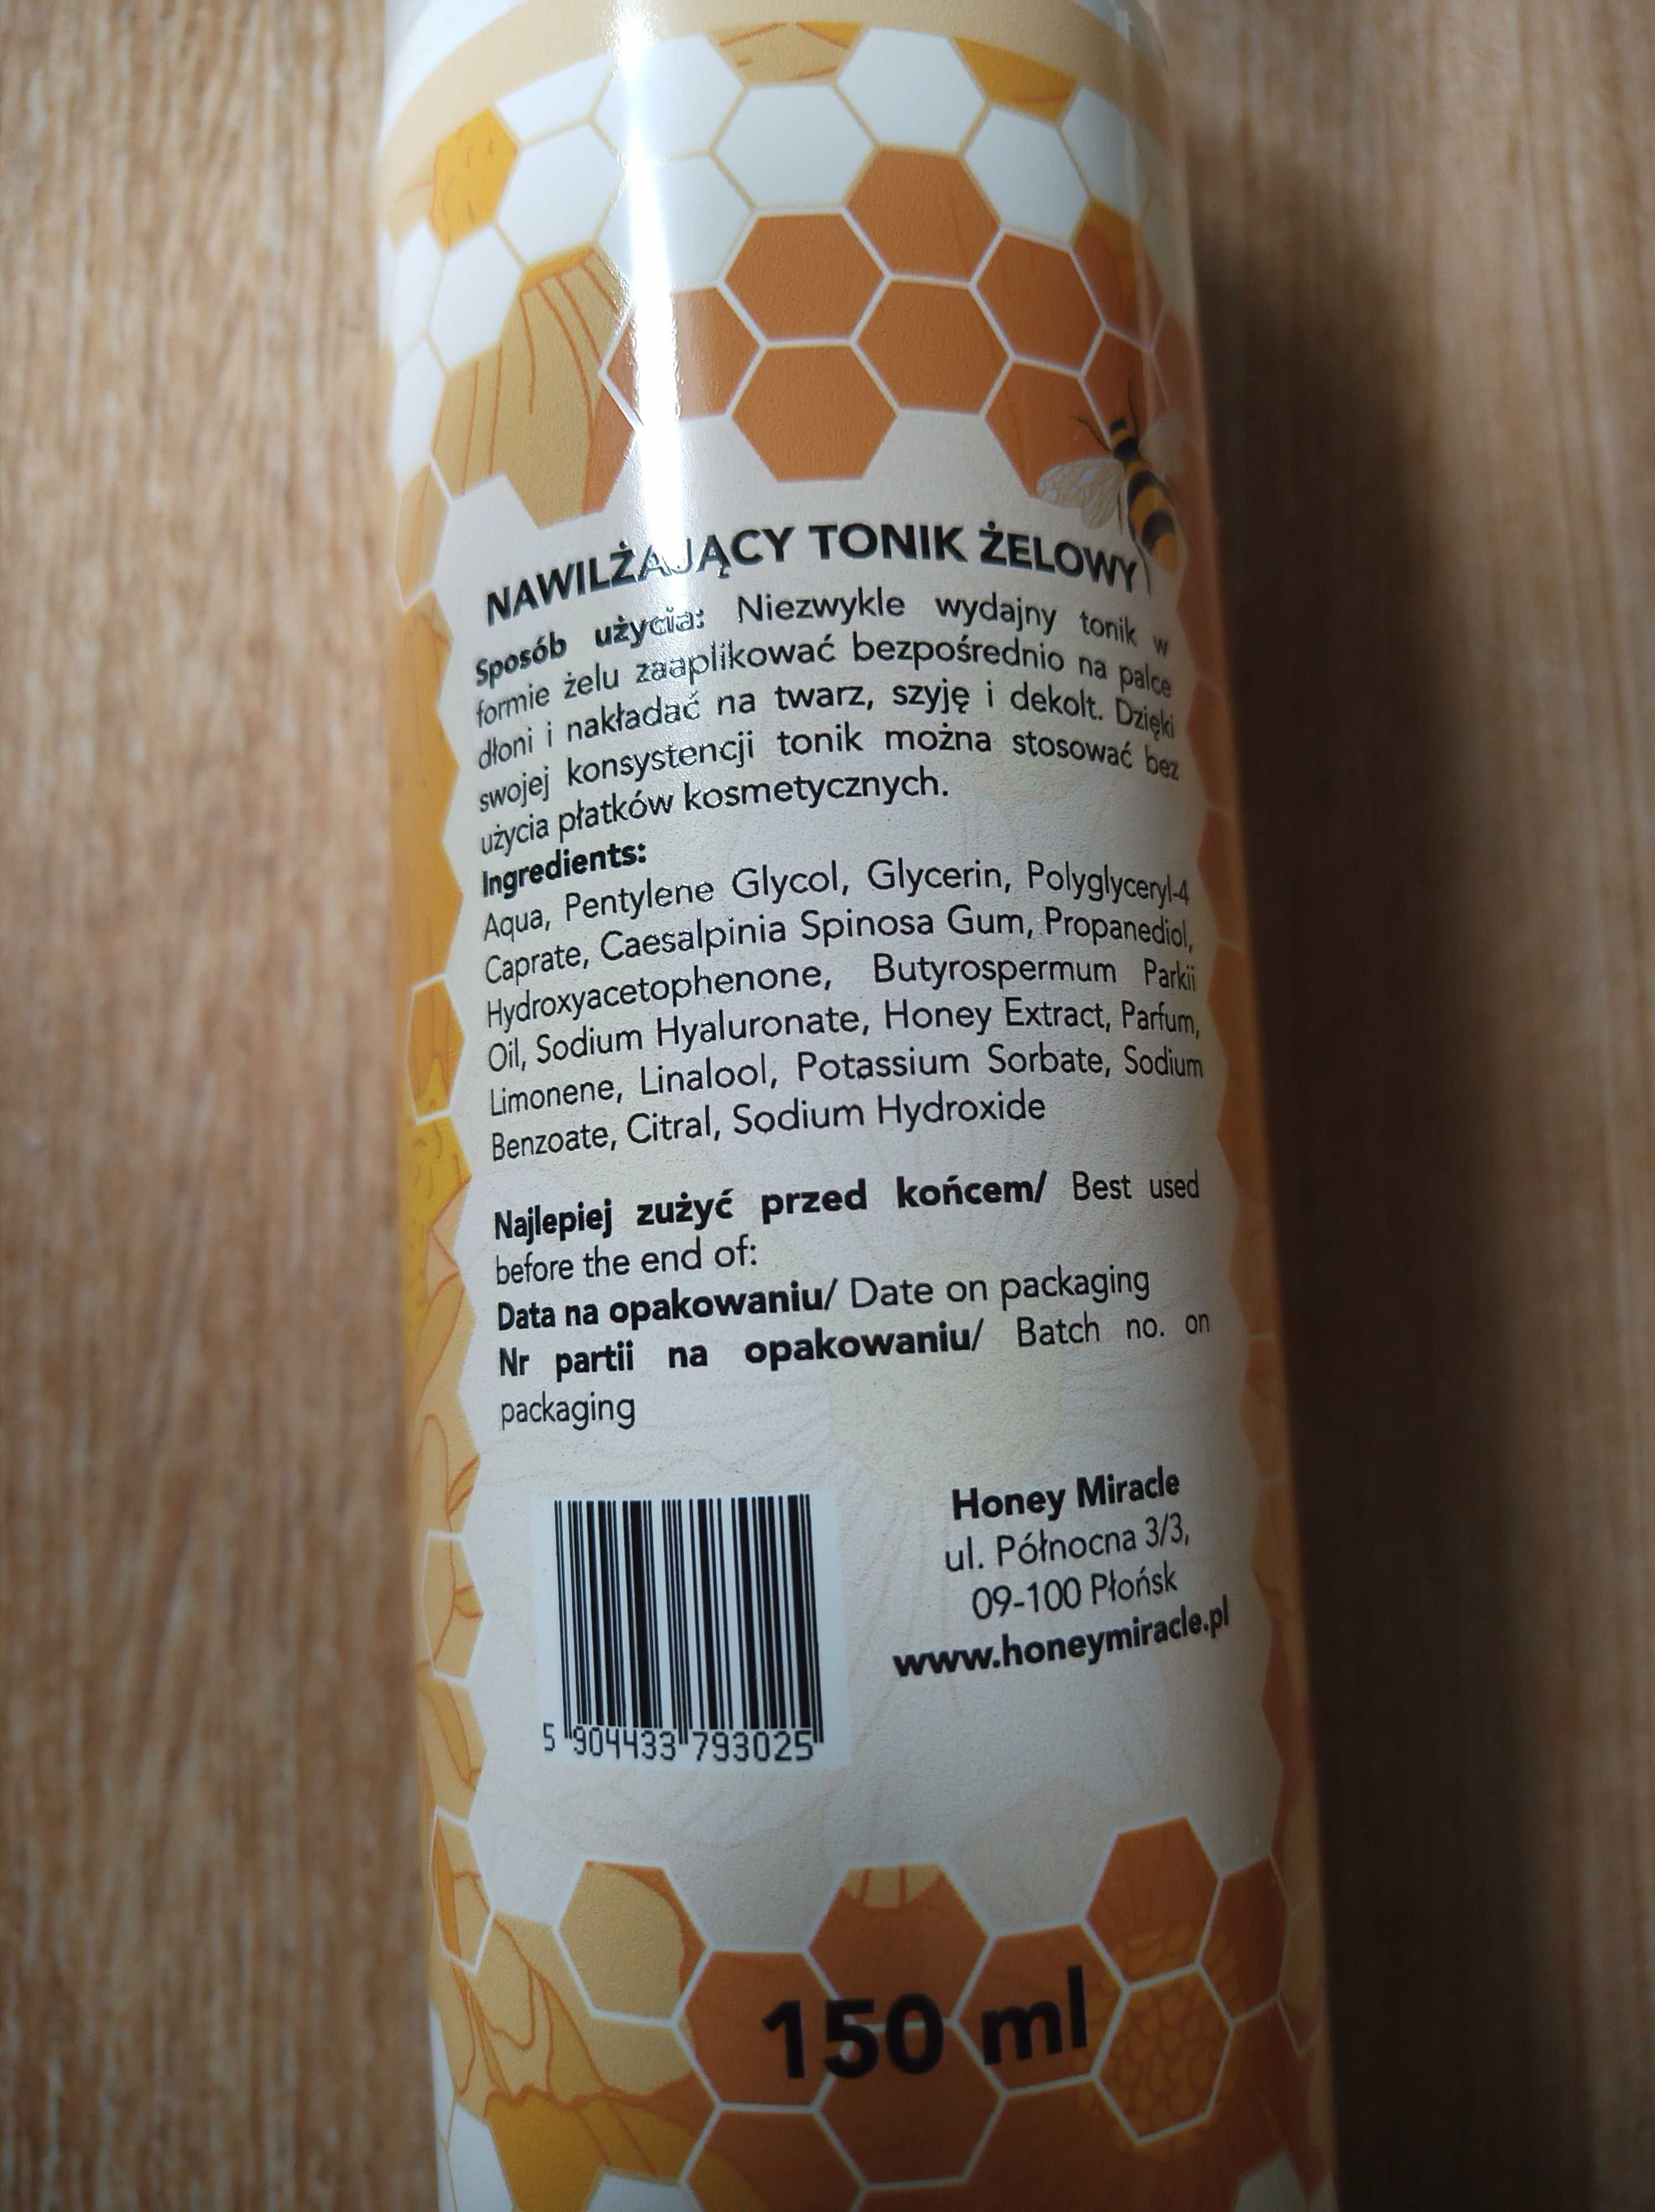 Żelowy nawilżający tonik Honey Miracle 150 ml NOWY